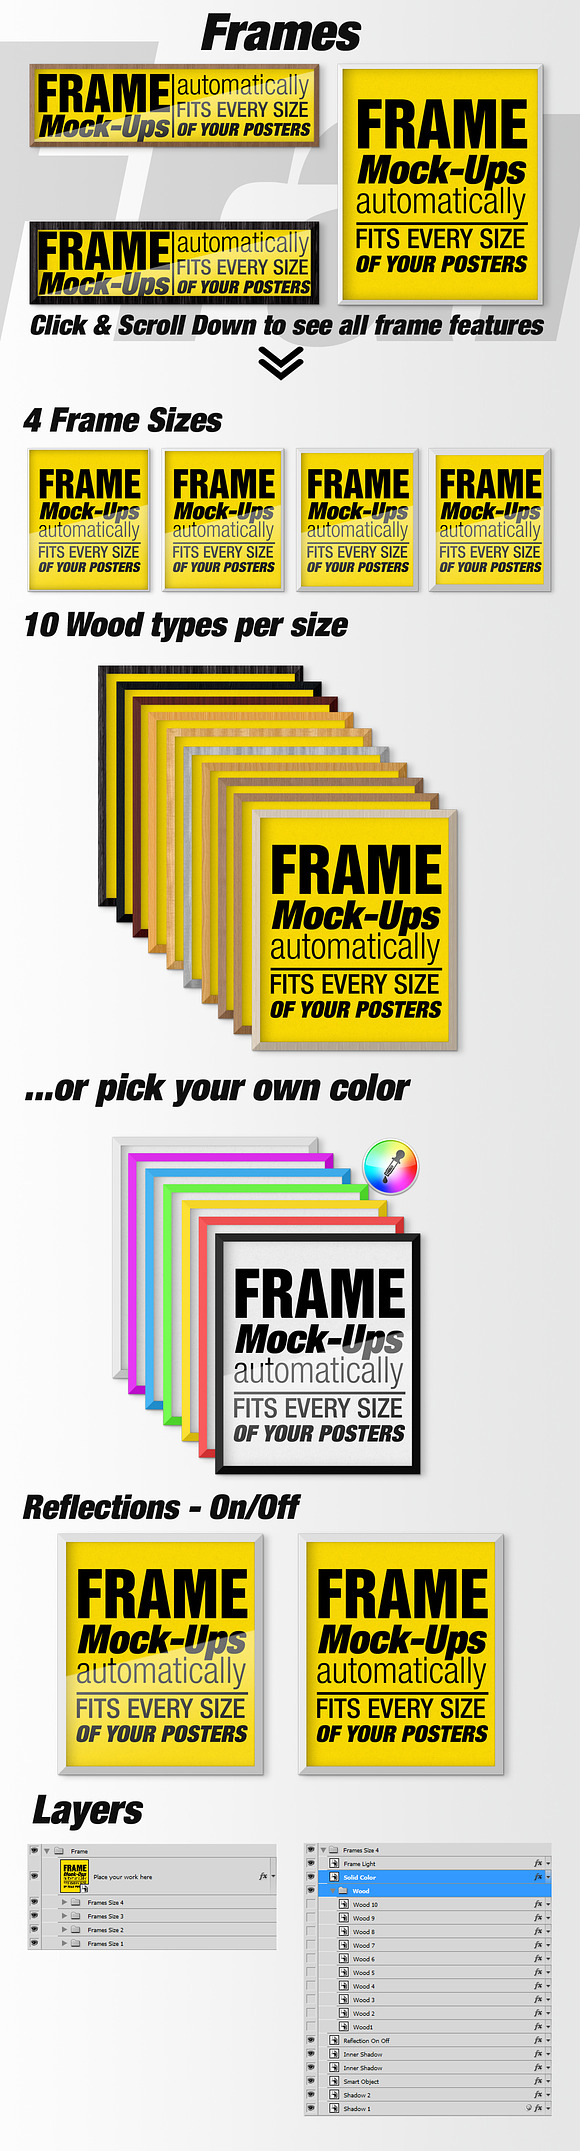 Canvas Mockups - Frames Mockups v 57 in Print Mockups - product preview 6